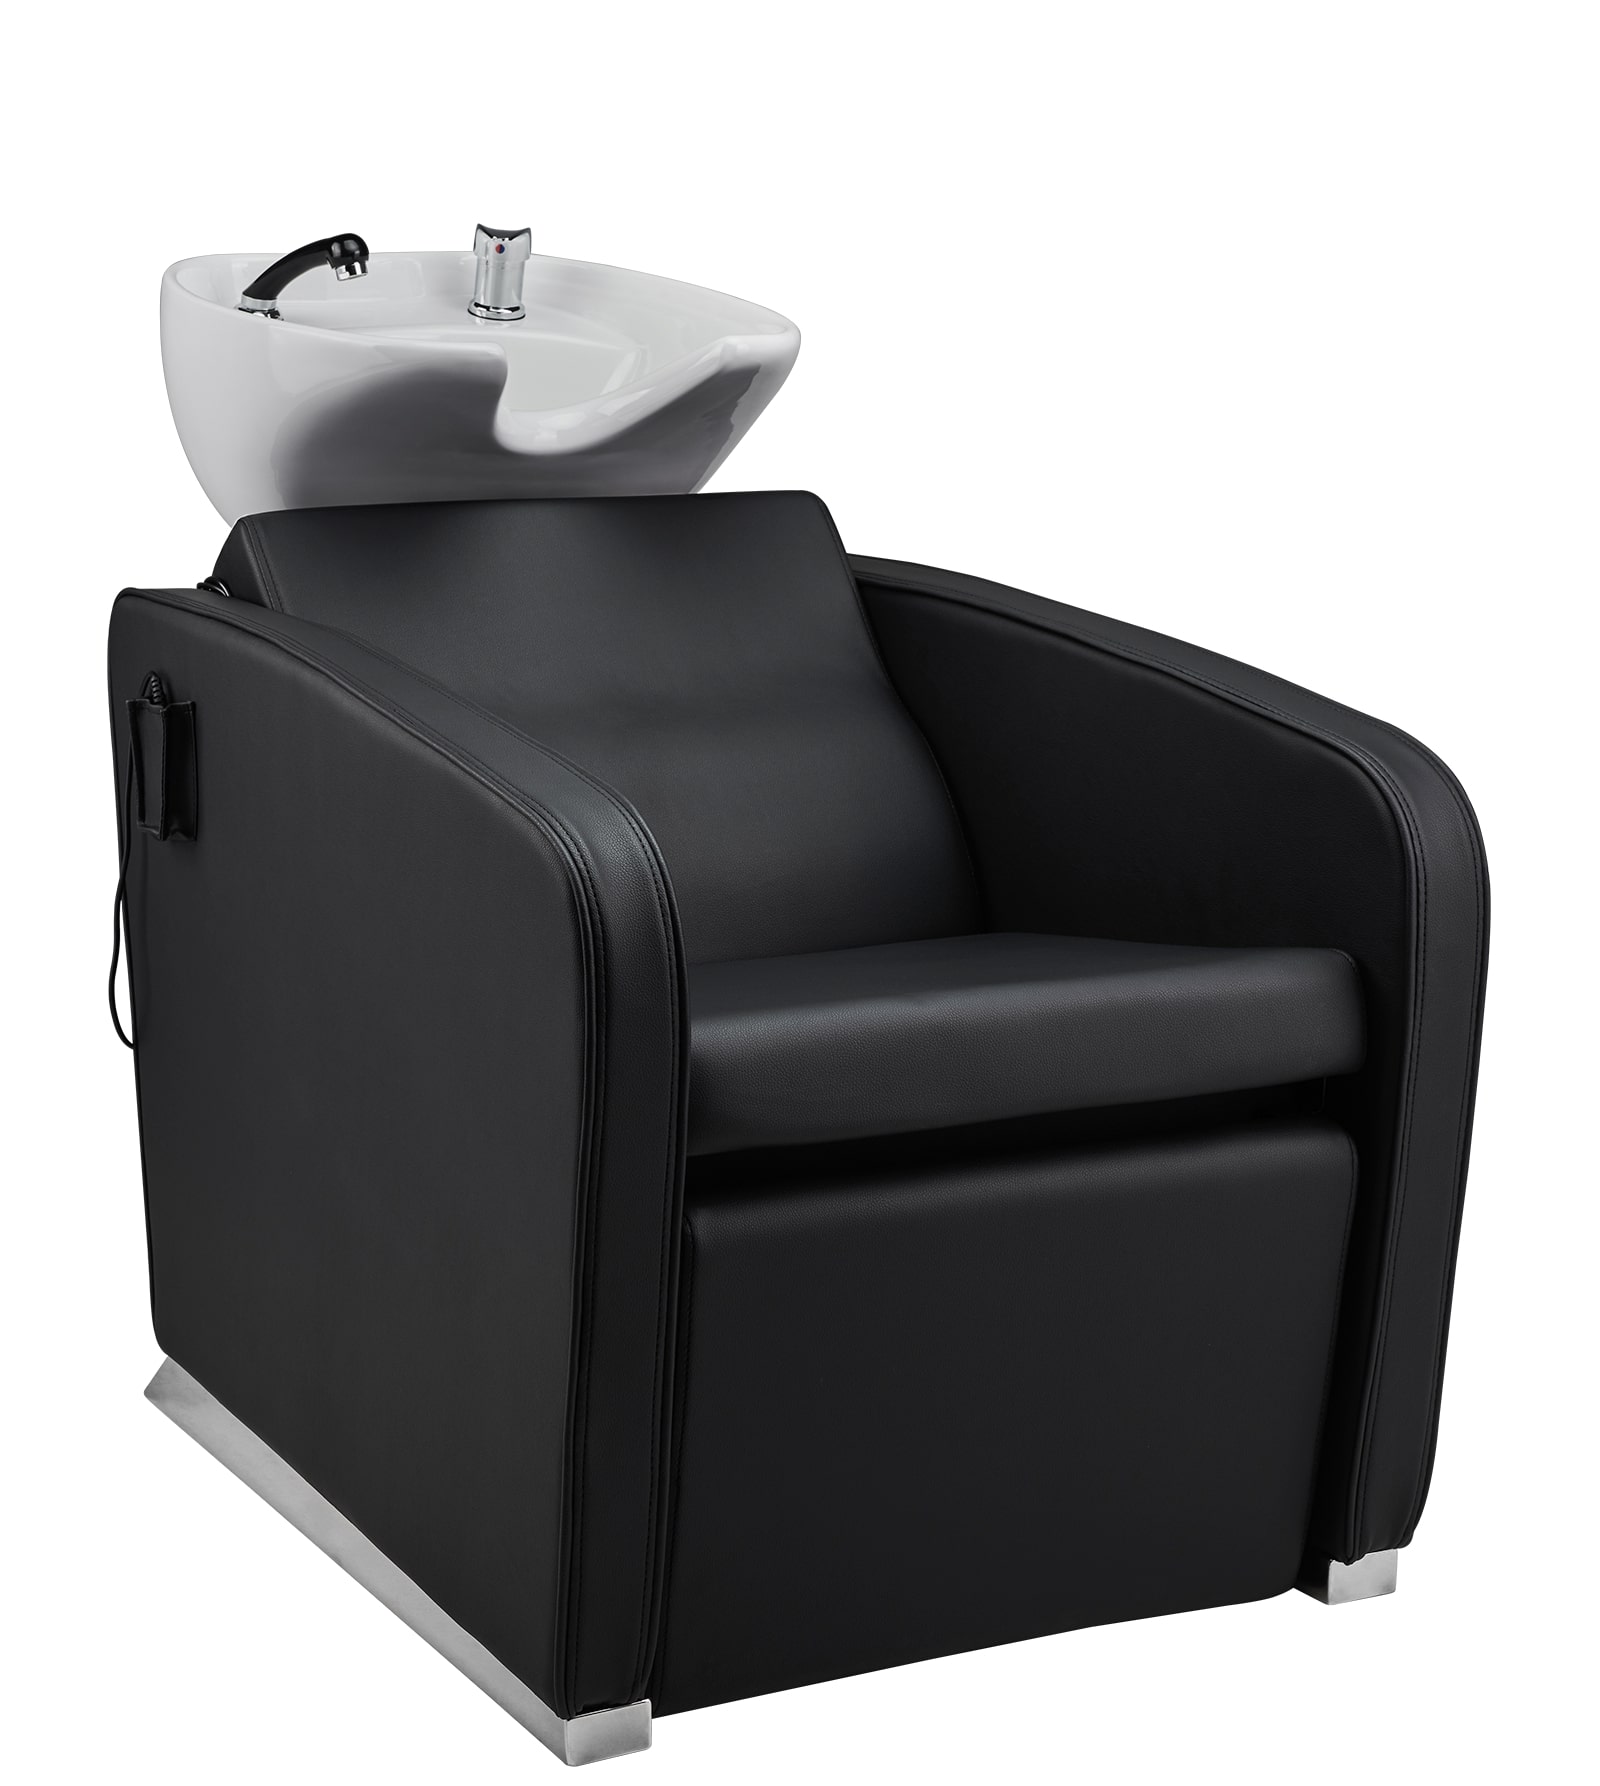 Super Salon Aston - kadeřnický mycí box s elektricky ovládanou opěrkou na nohy